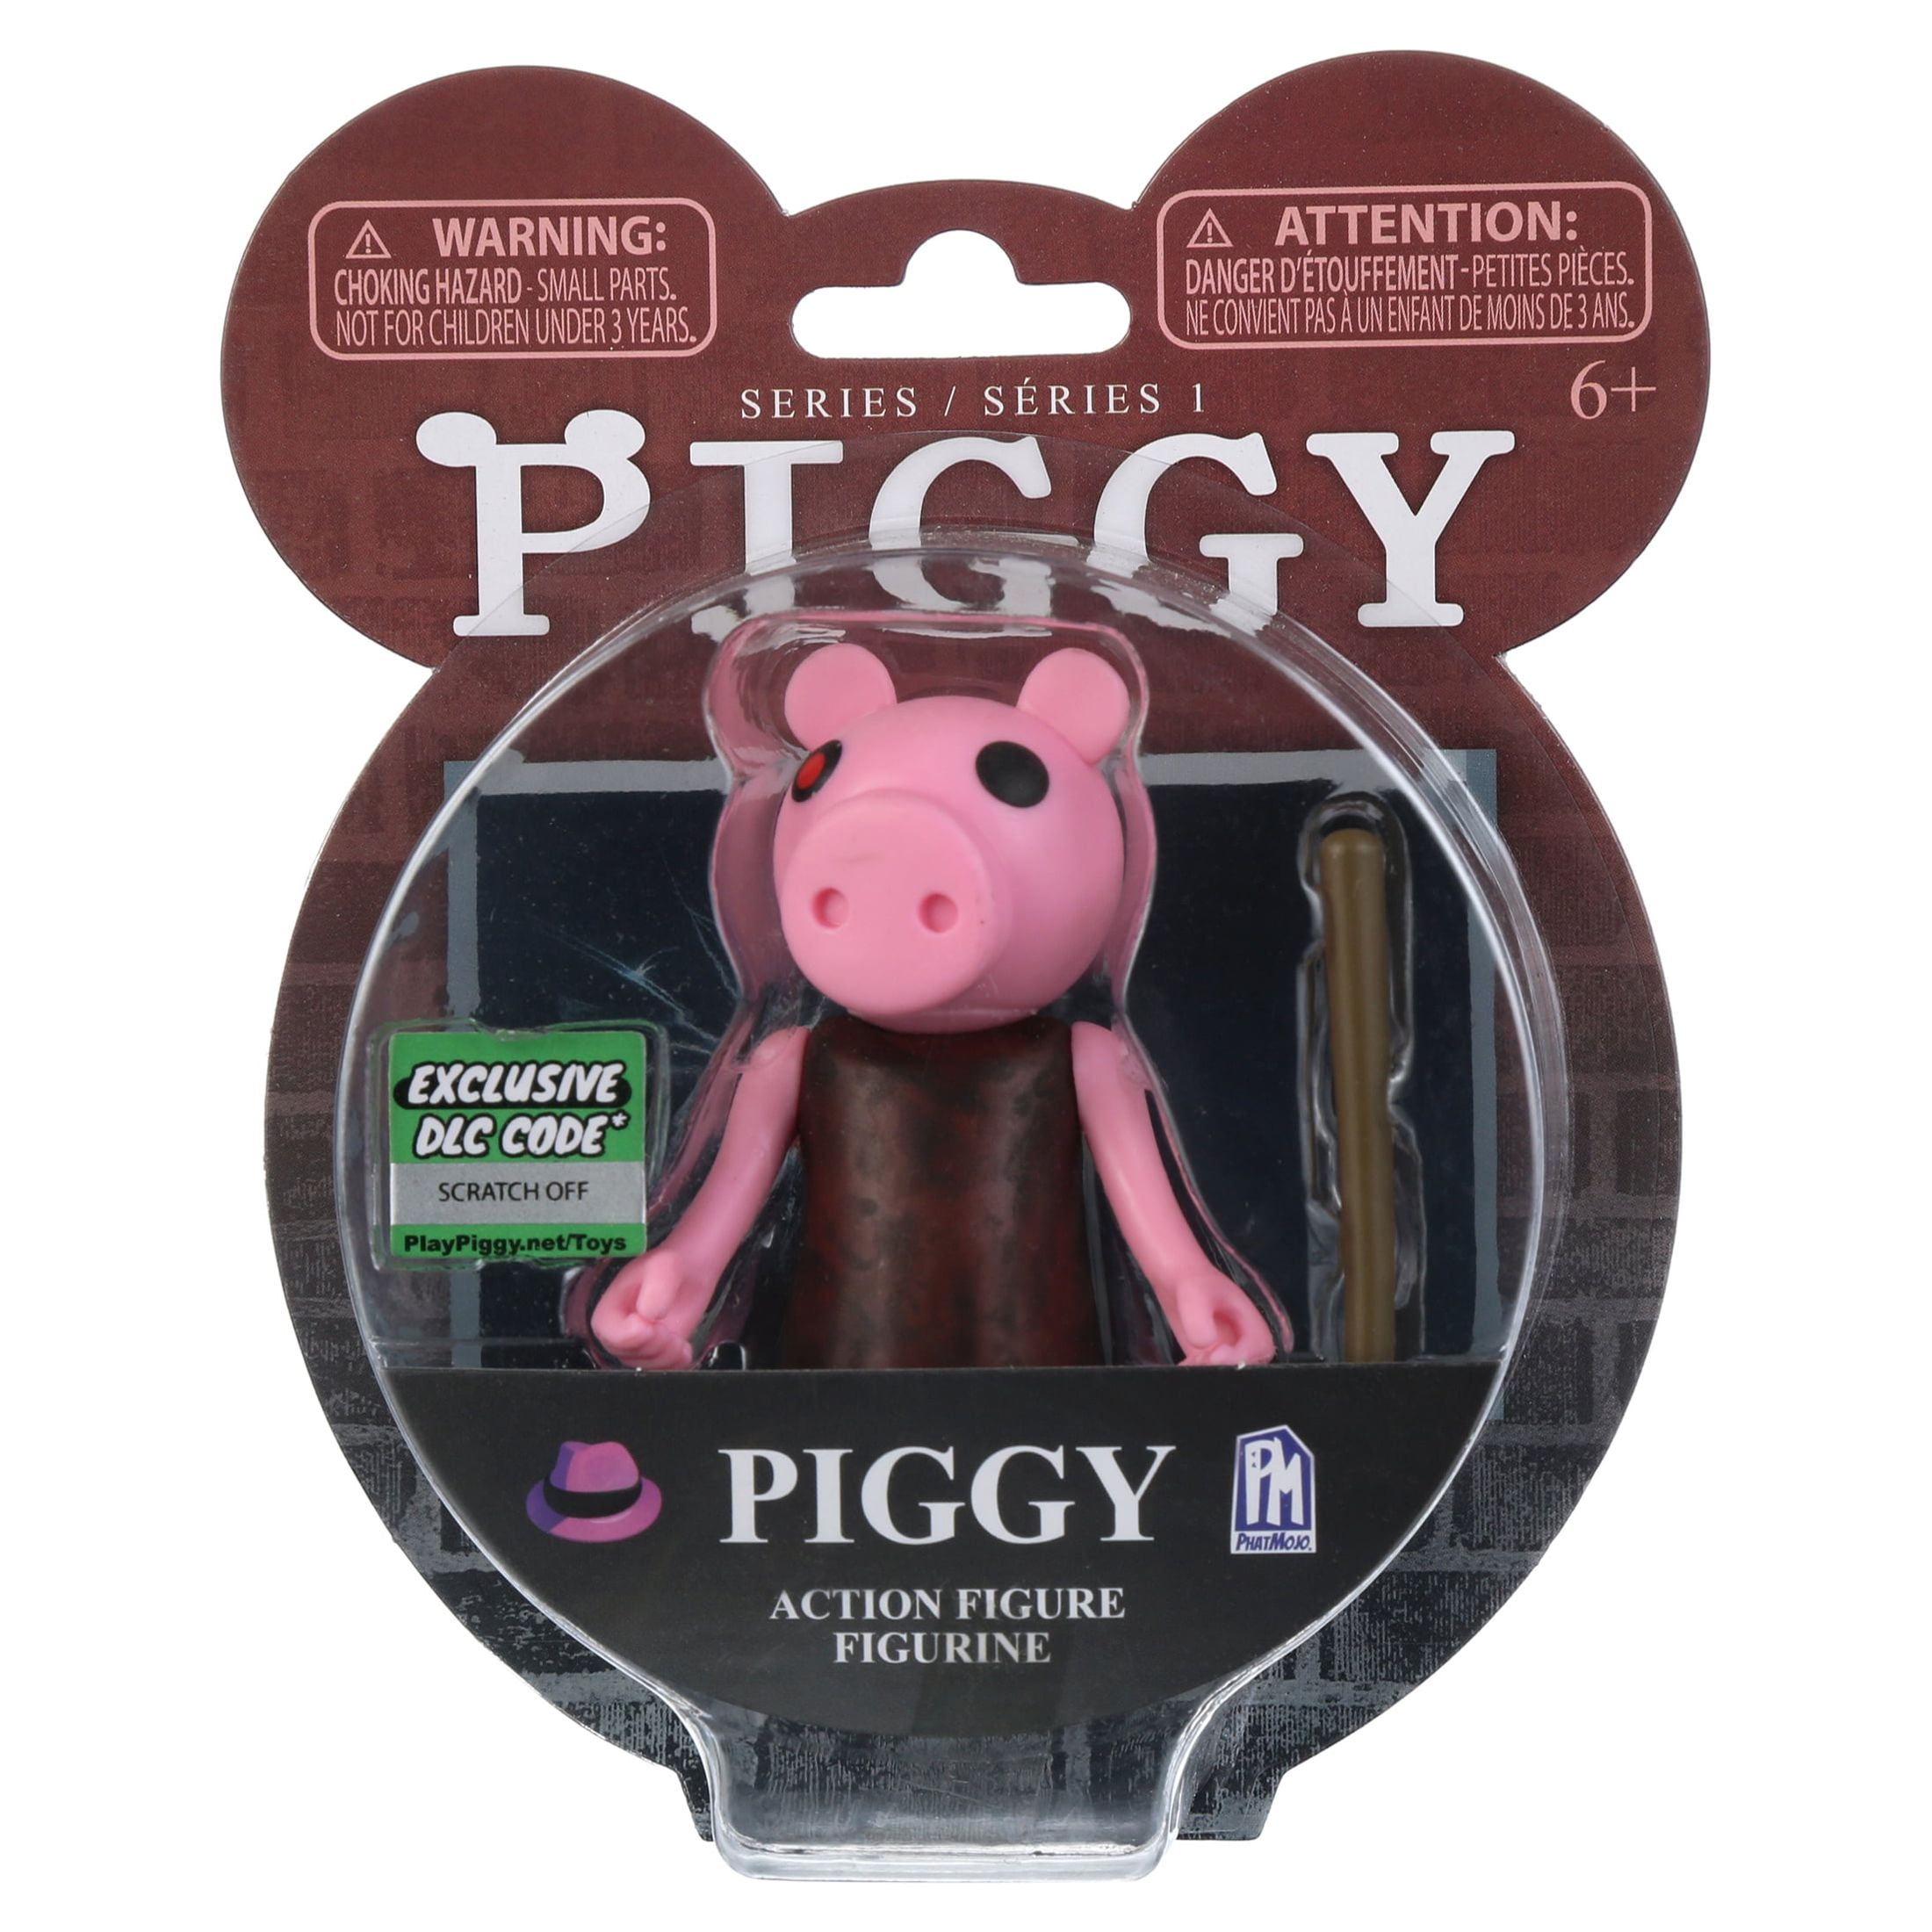 piggy action figure series 1, Five Below